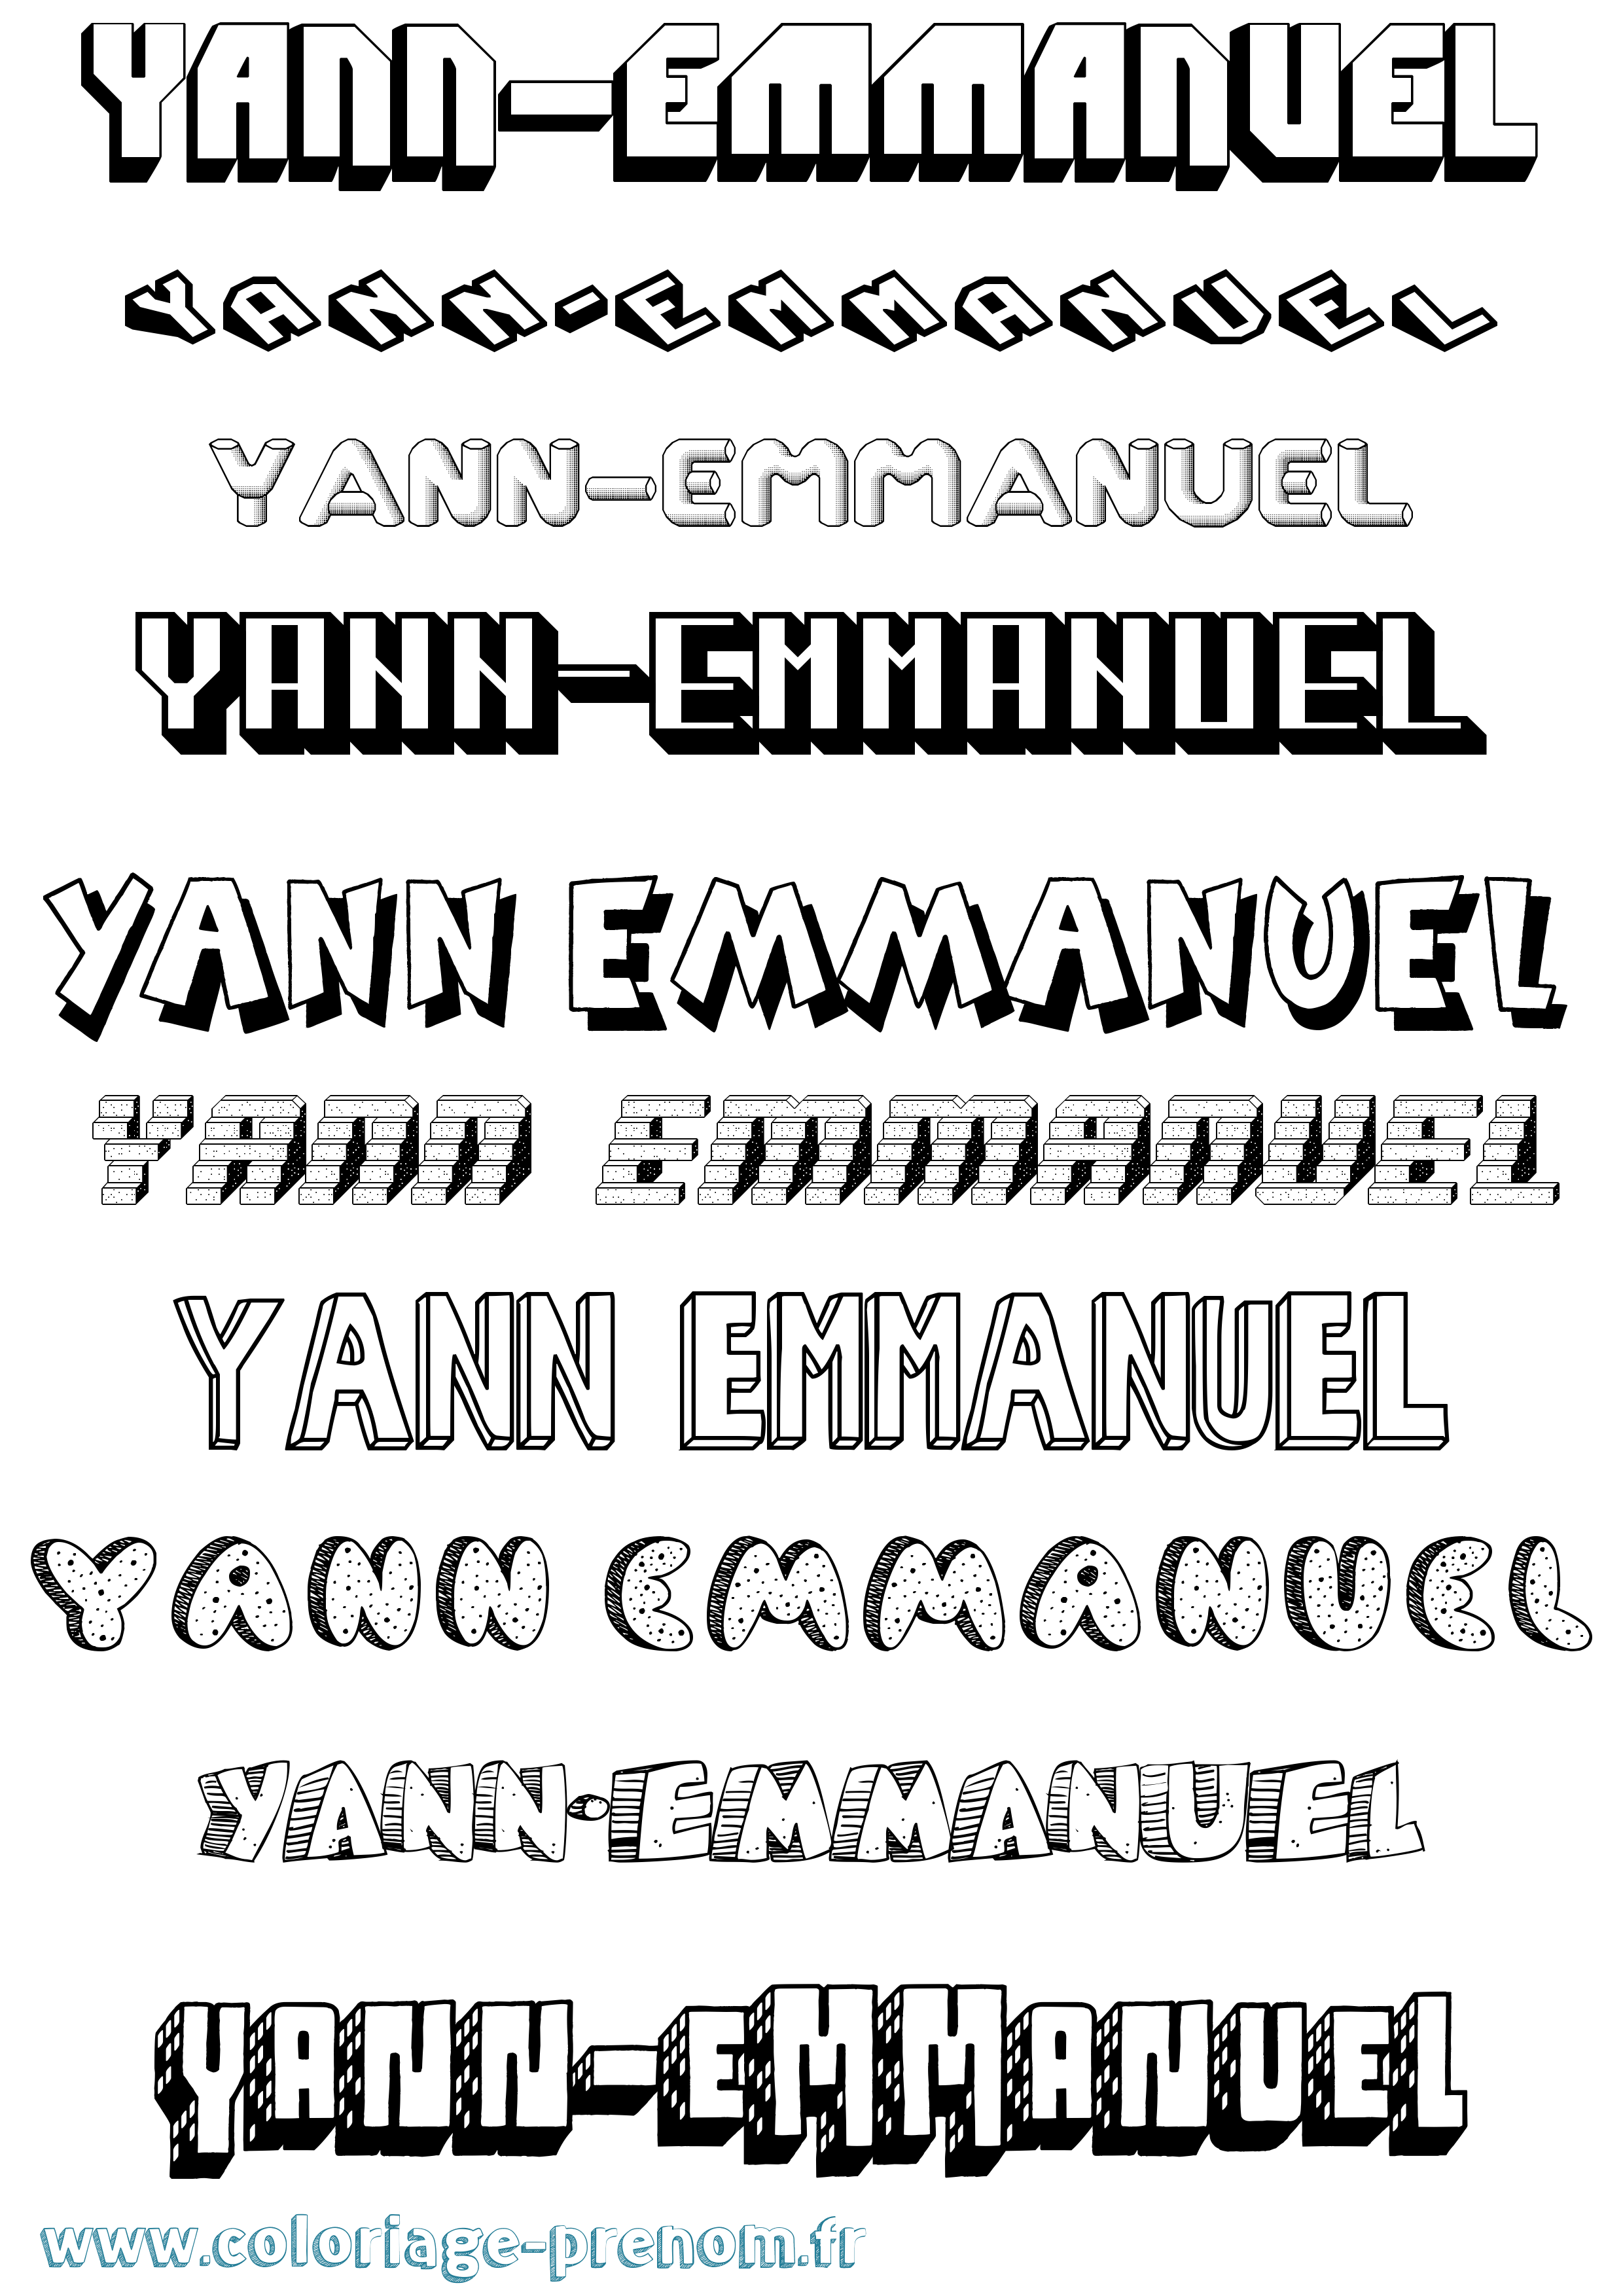 Coloriage prénom Yann-Emmanuel Effet 3D